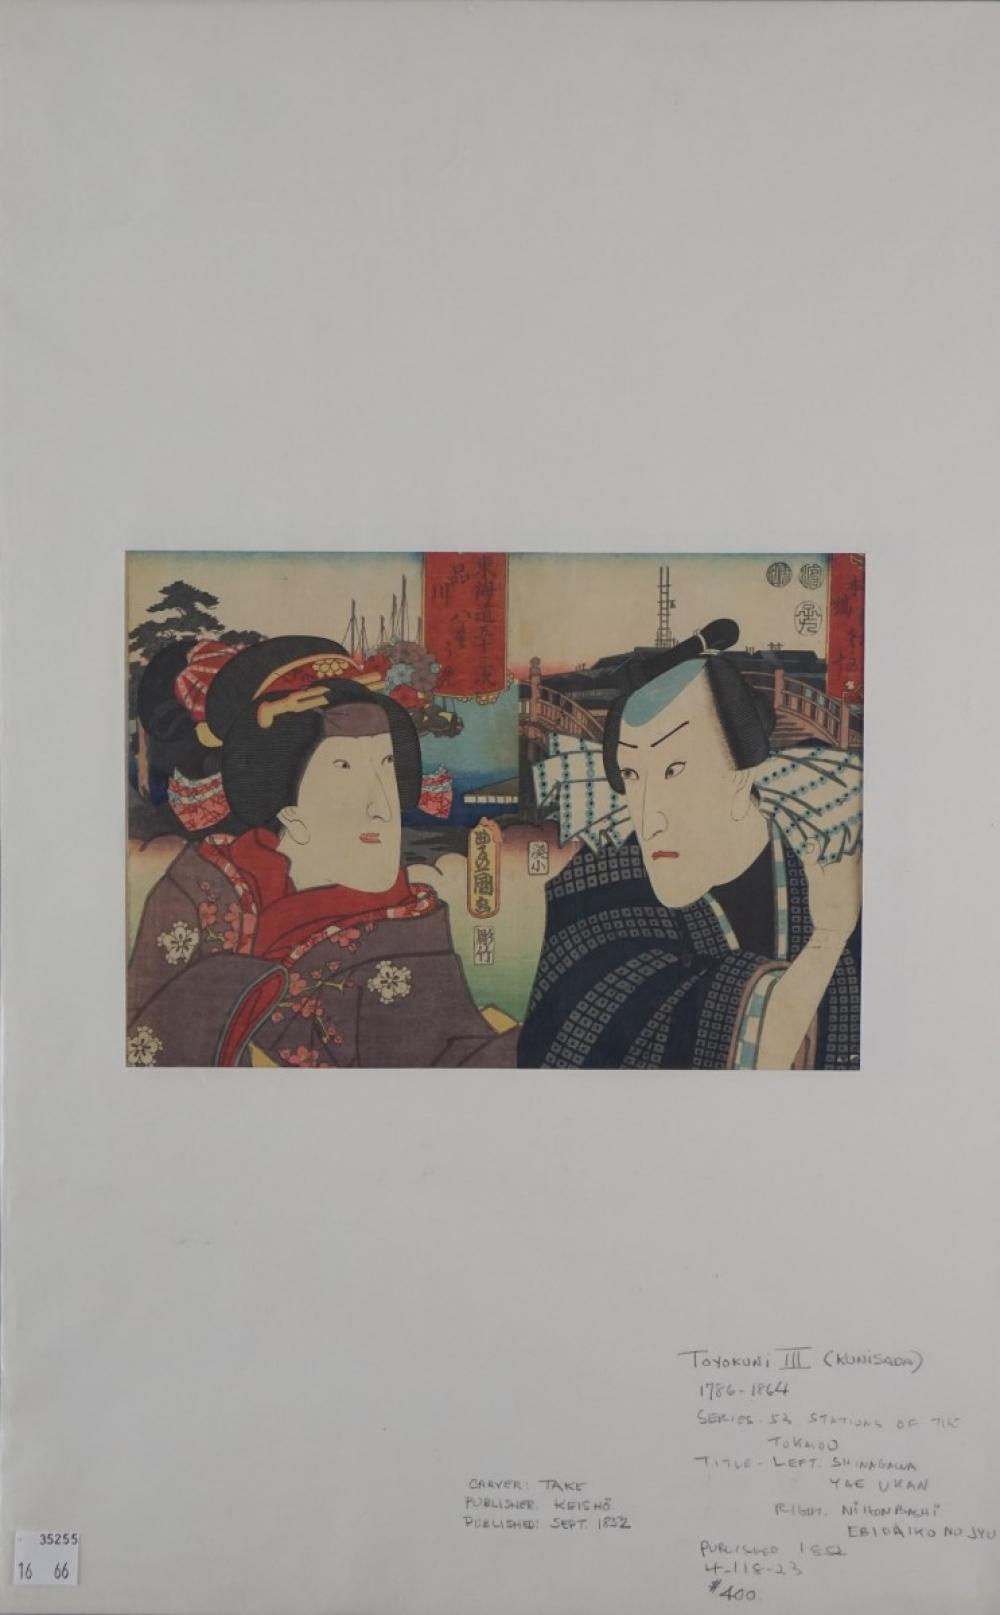 TOYOKUNI III (JAPANESE, 19TH CENTURY)